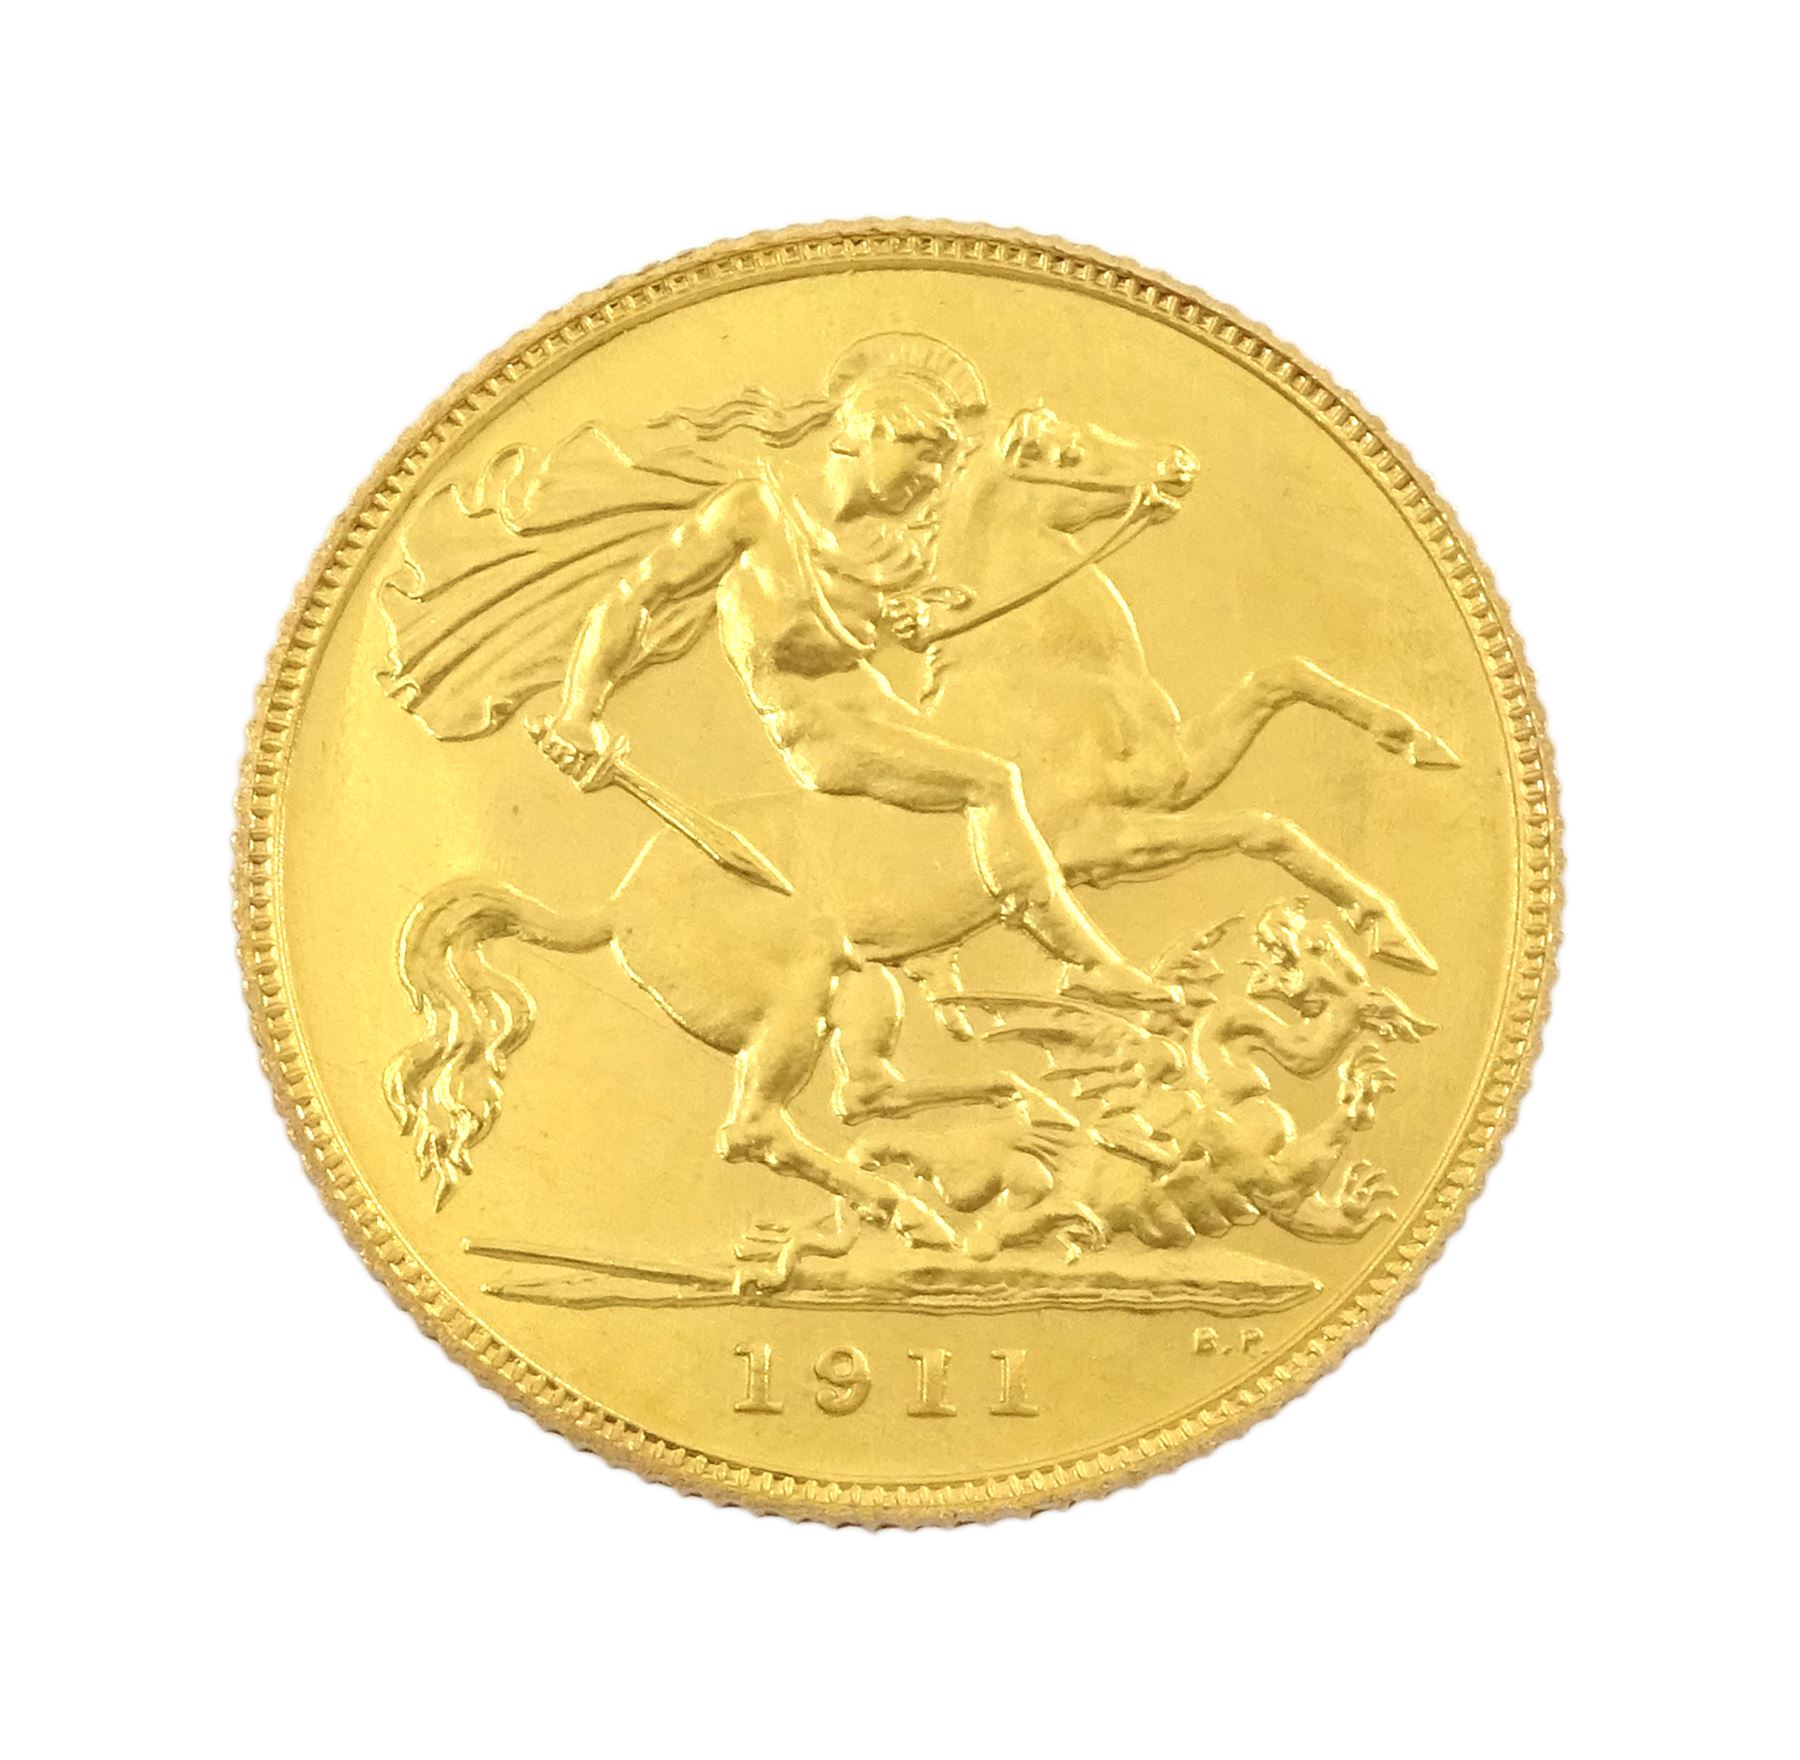 King George V 1911 proof short coin set - Image 7 of 24